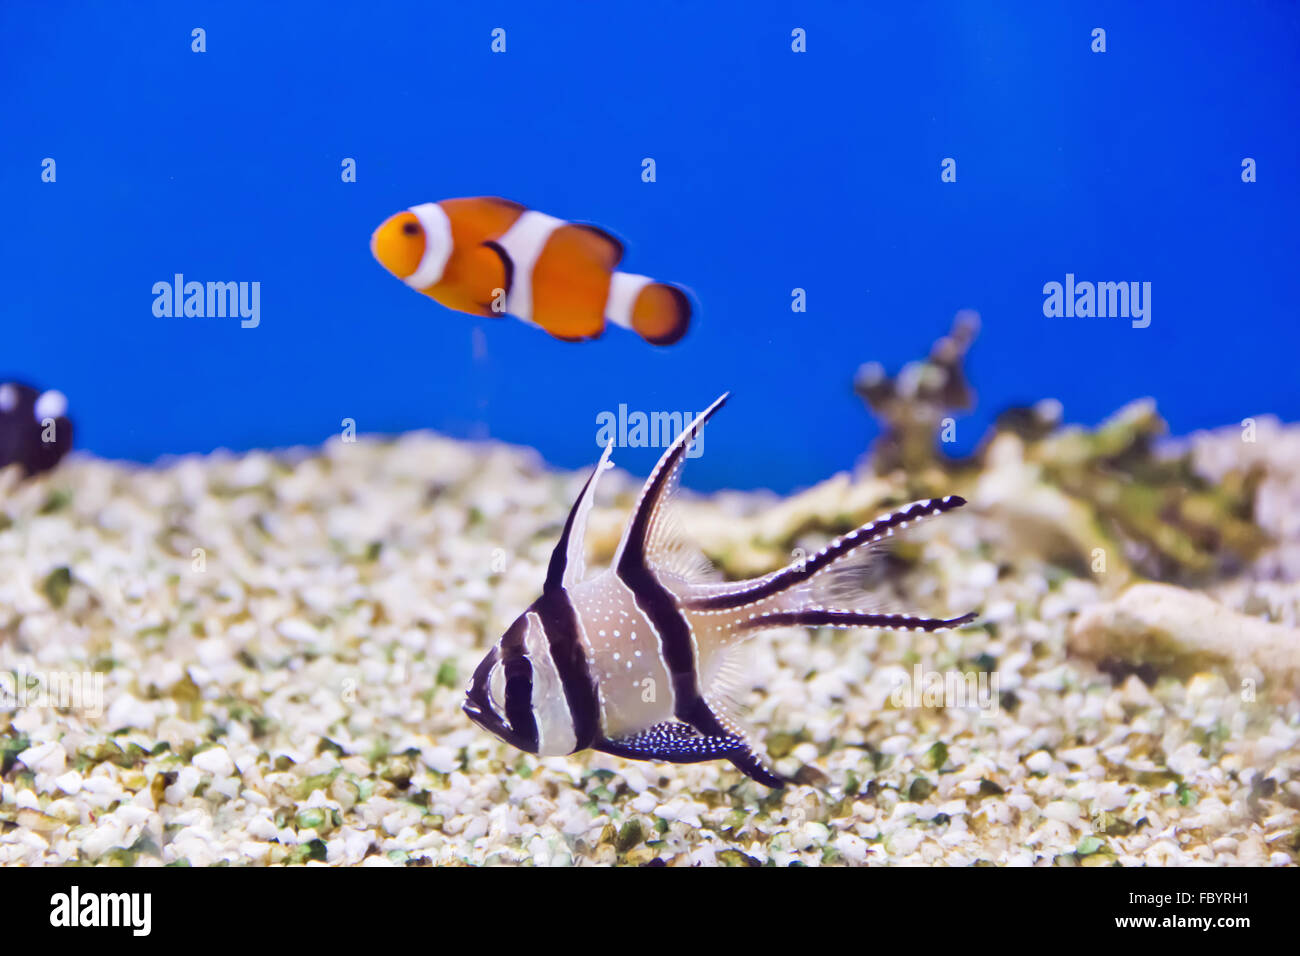 Aquarium fish Stock Photo